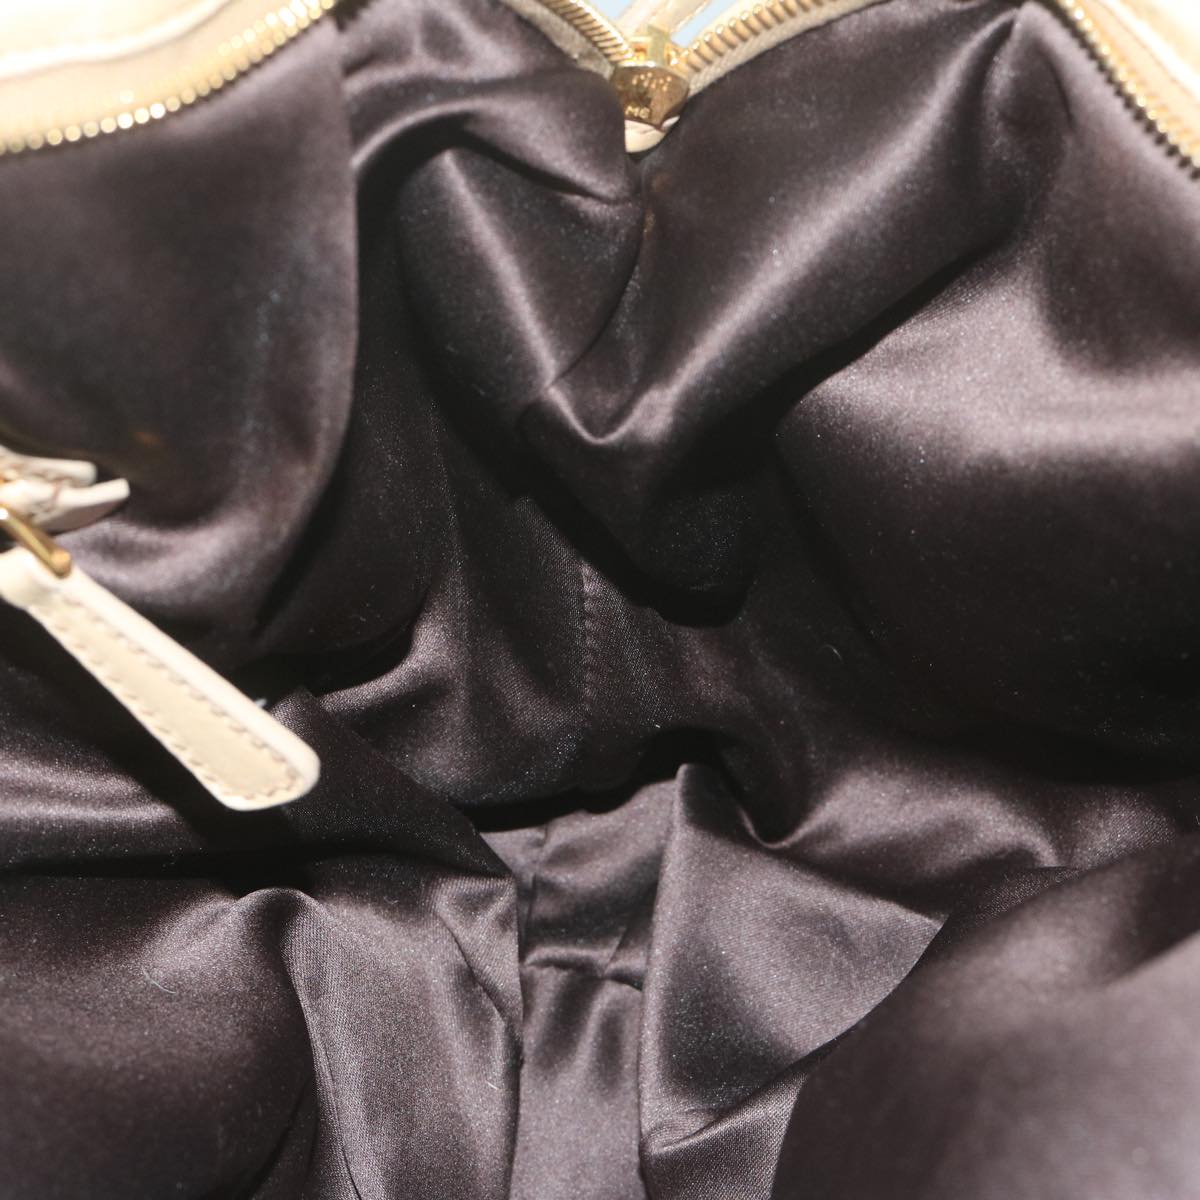 Miu Miu Hand Bag Leather Beige Auth 64367